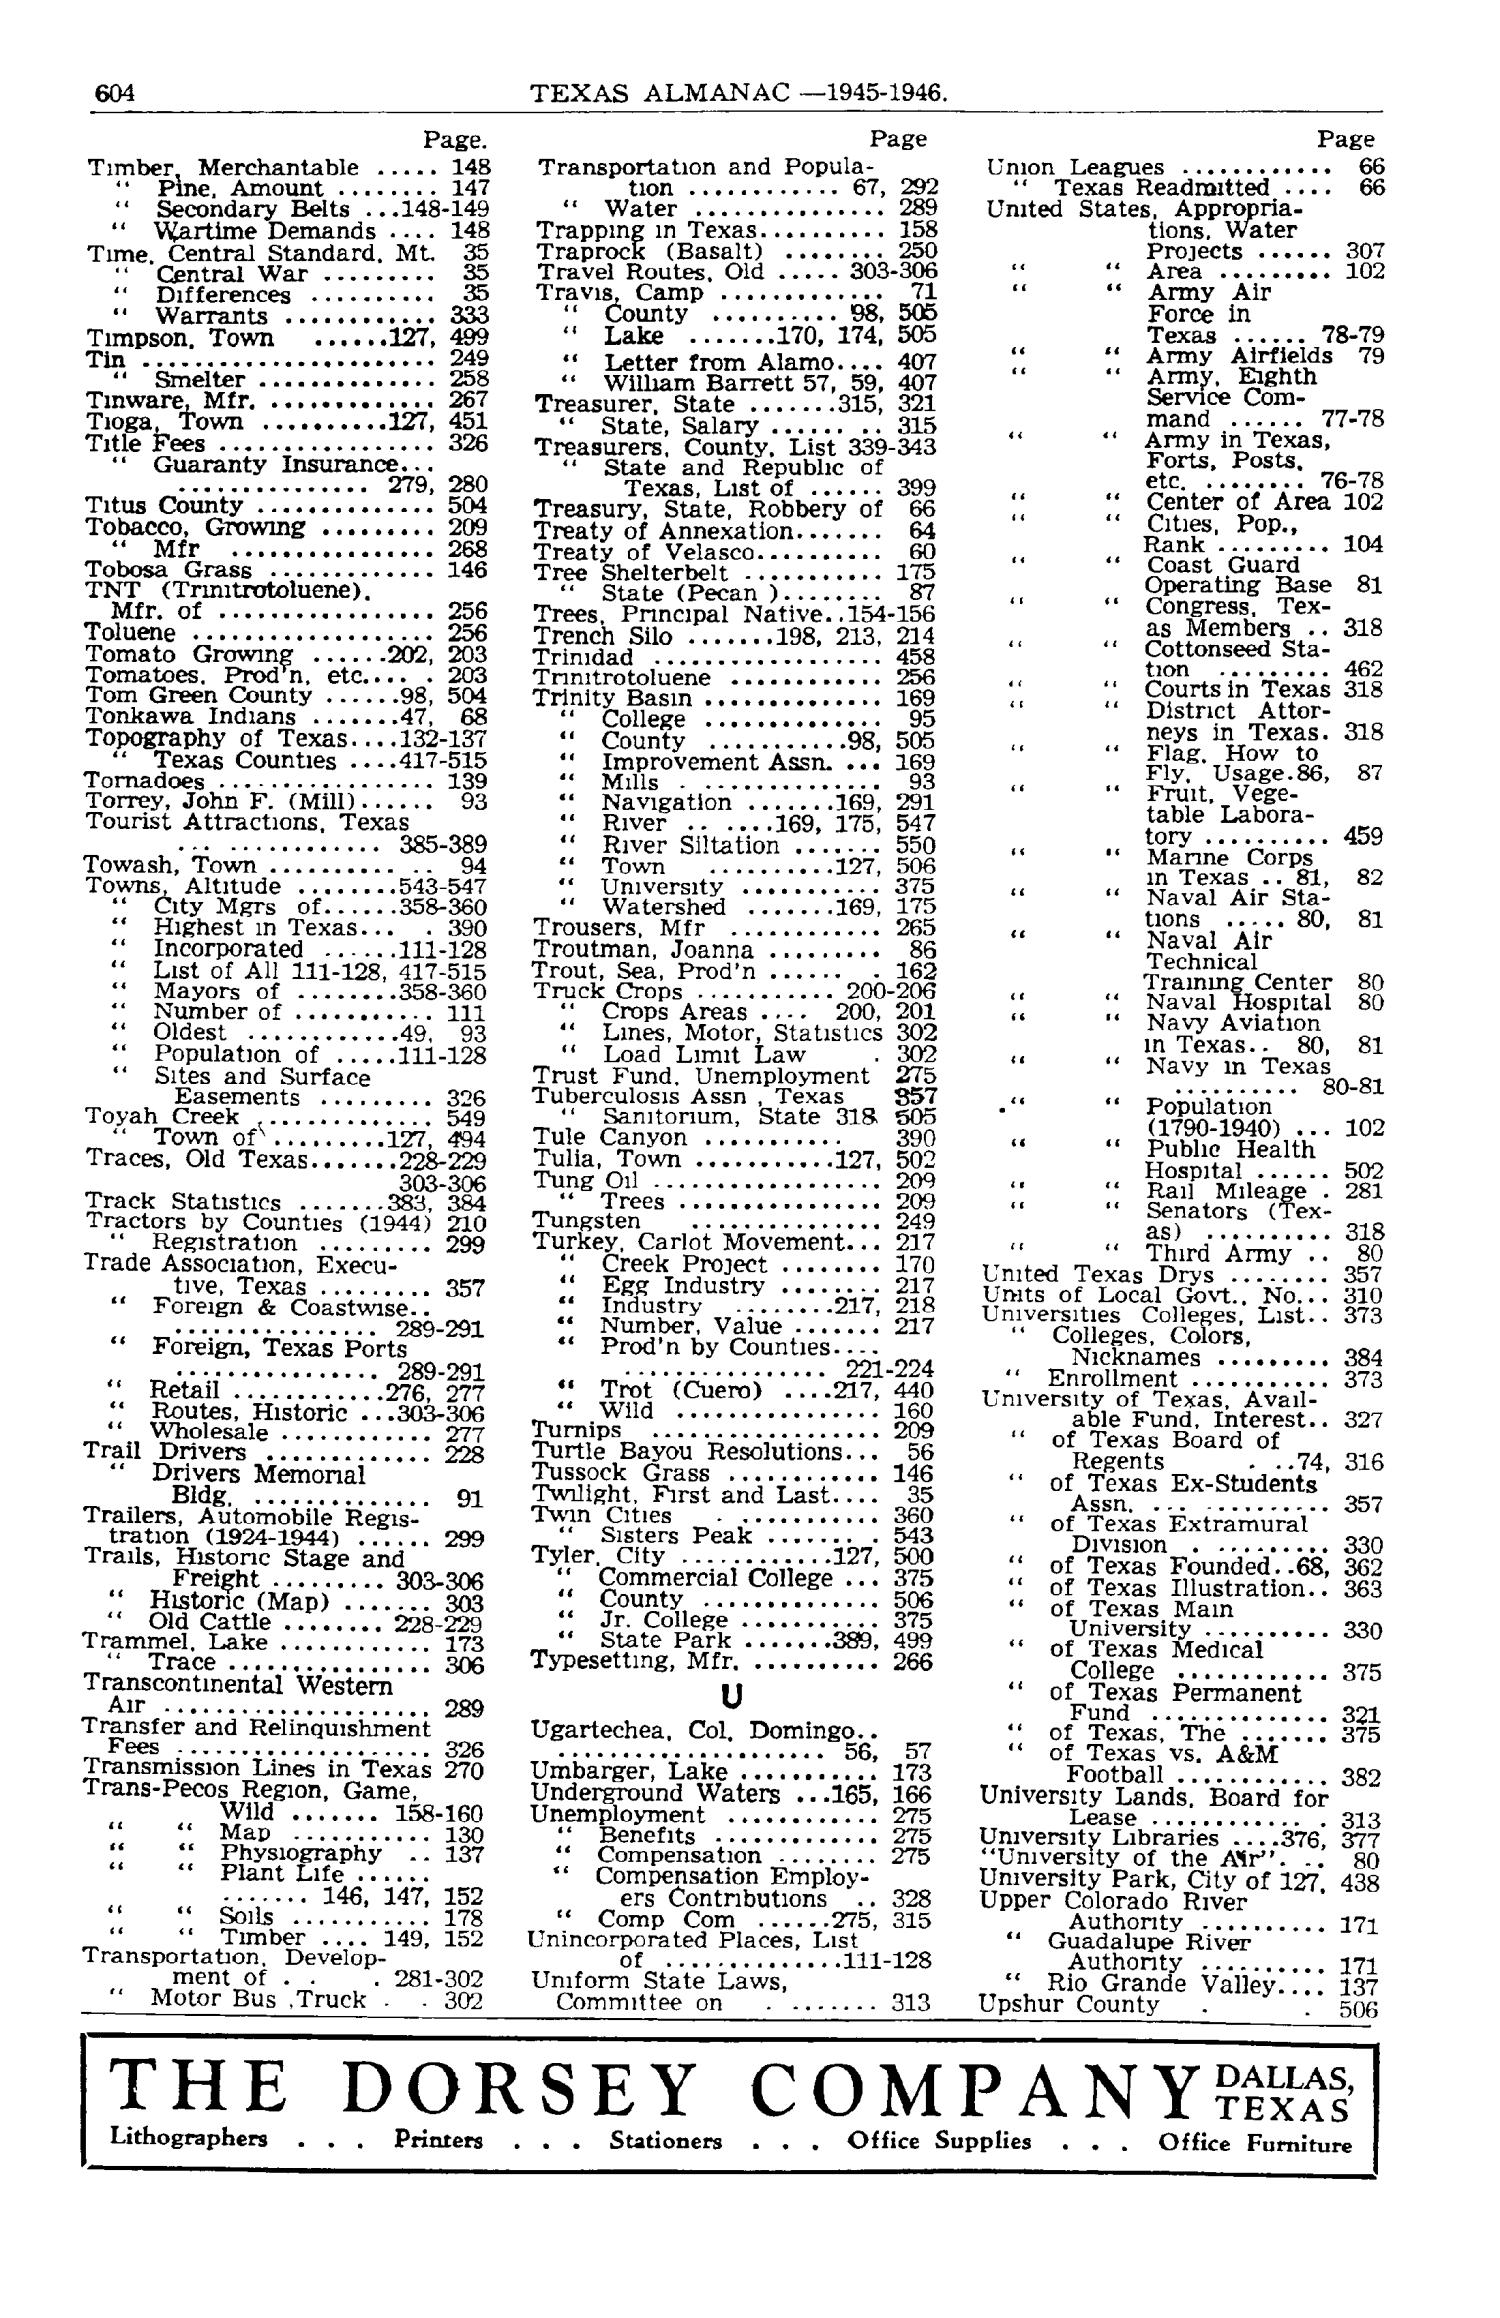 Texas Almanac, 1945-1946
                                                
                                                    604
                                                